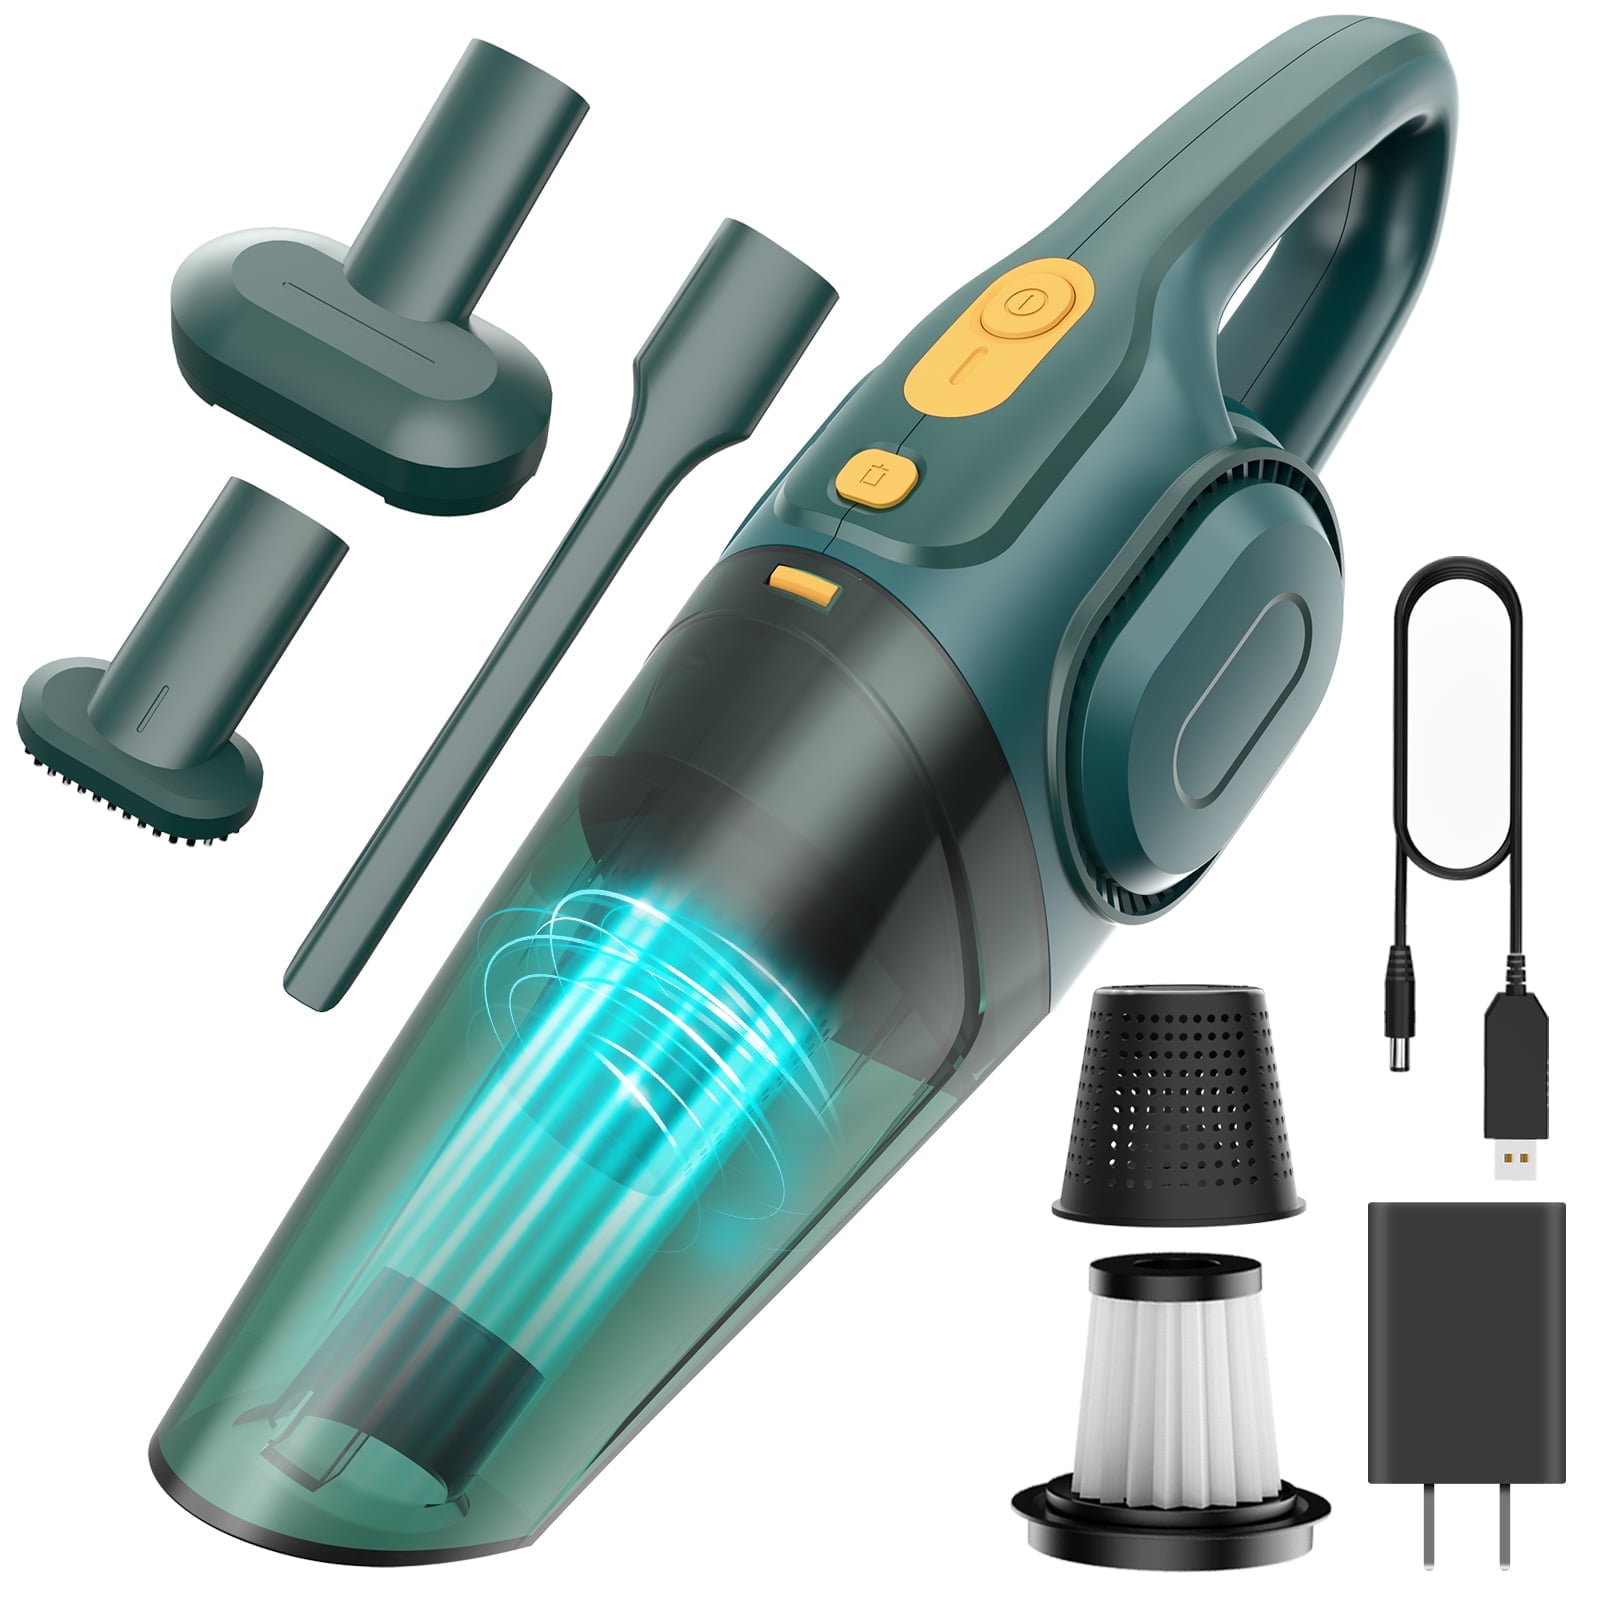  Black & Decker 16V Lithium Hand Vacuum, CHV1410L32 : Home &  Kitchen